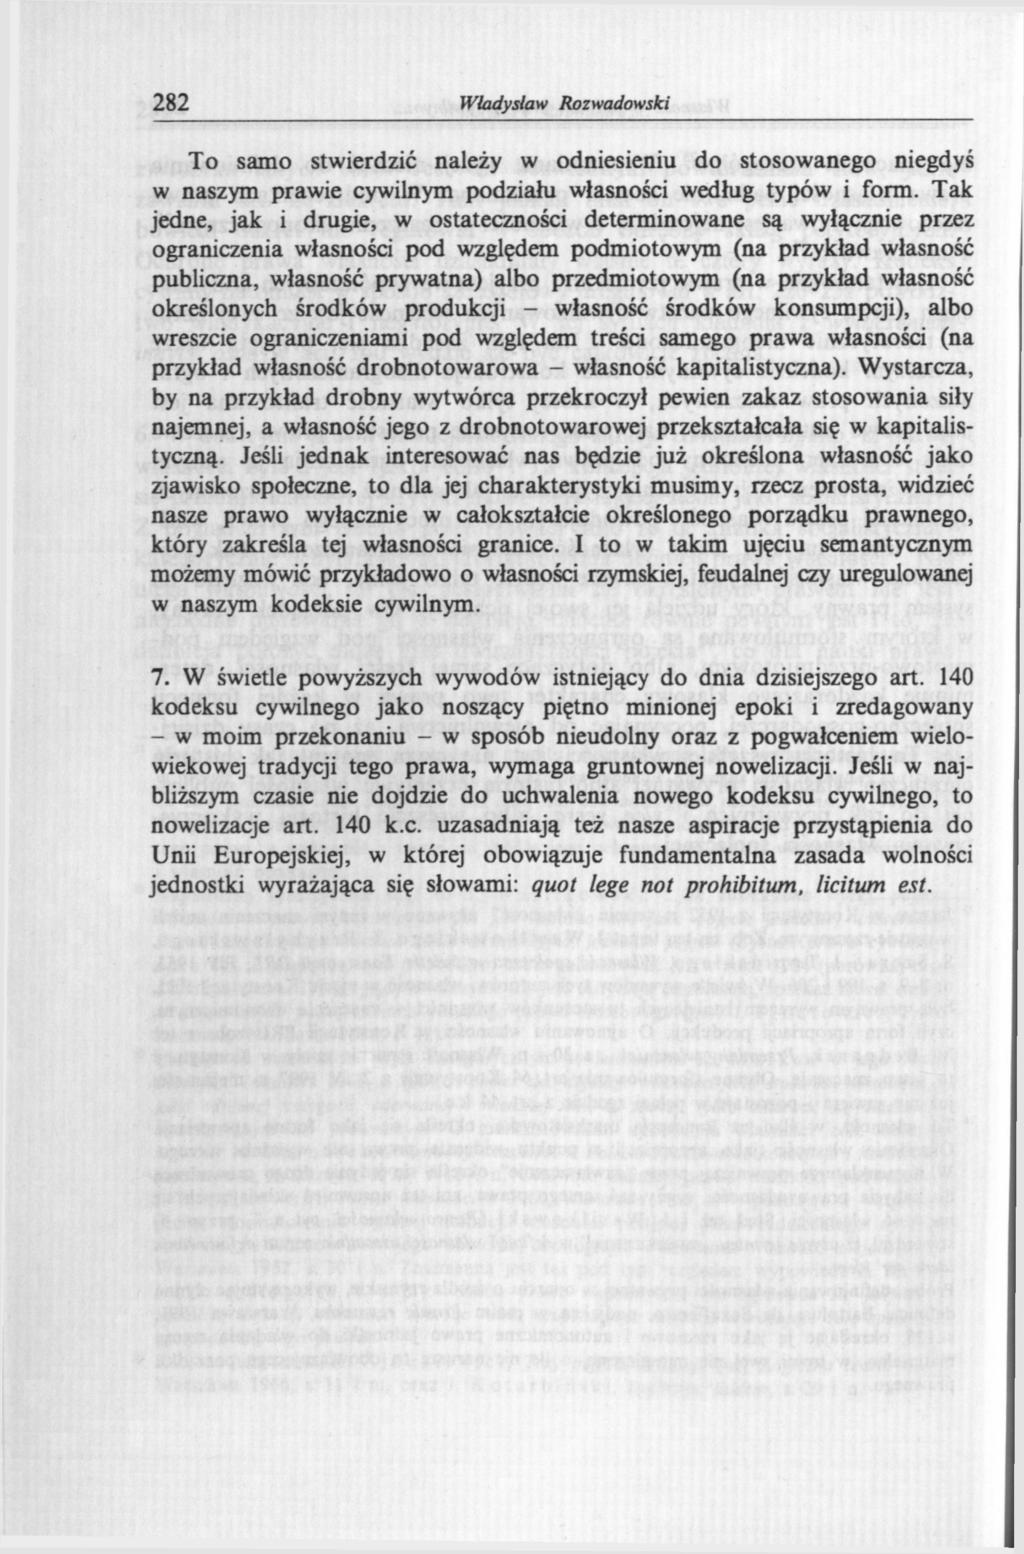 282 Władysław Rozwadowski To samo stwierdzić należy w odniesieniu do stosowanego niegdyś w naszym prawie cywilnym podziału własności według typów i form.